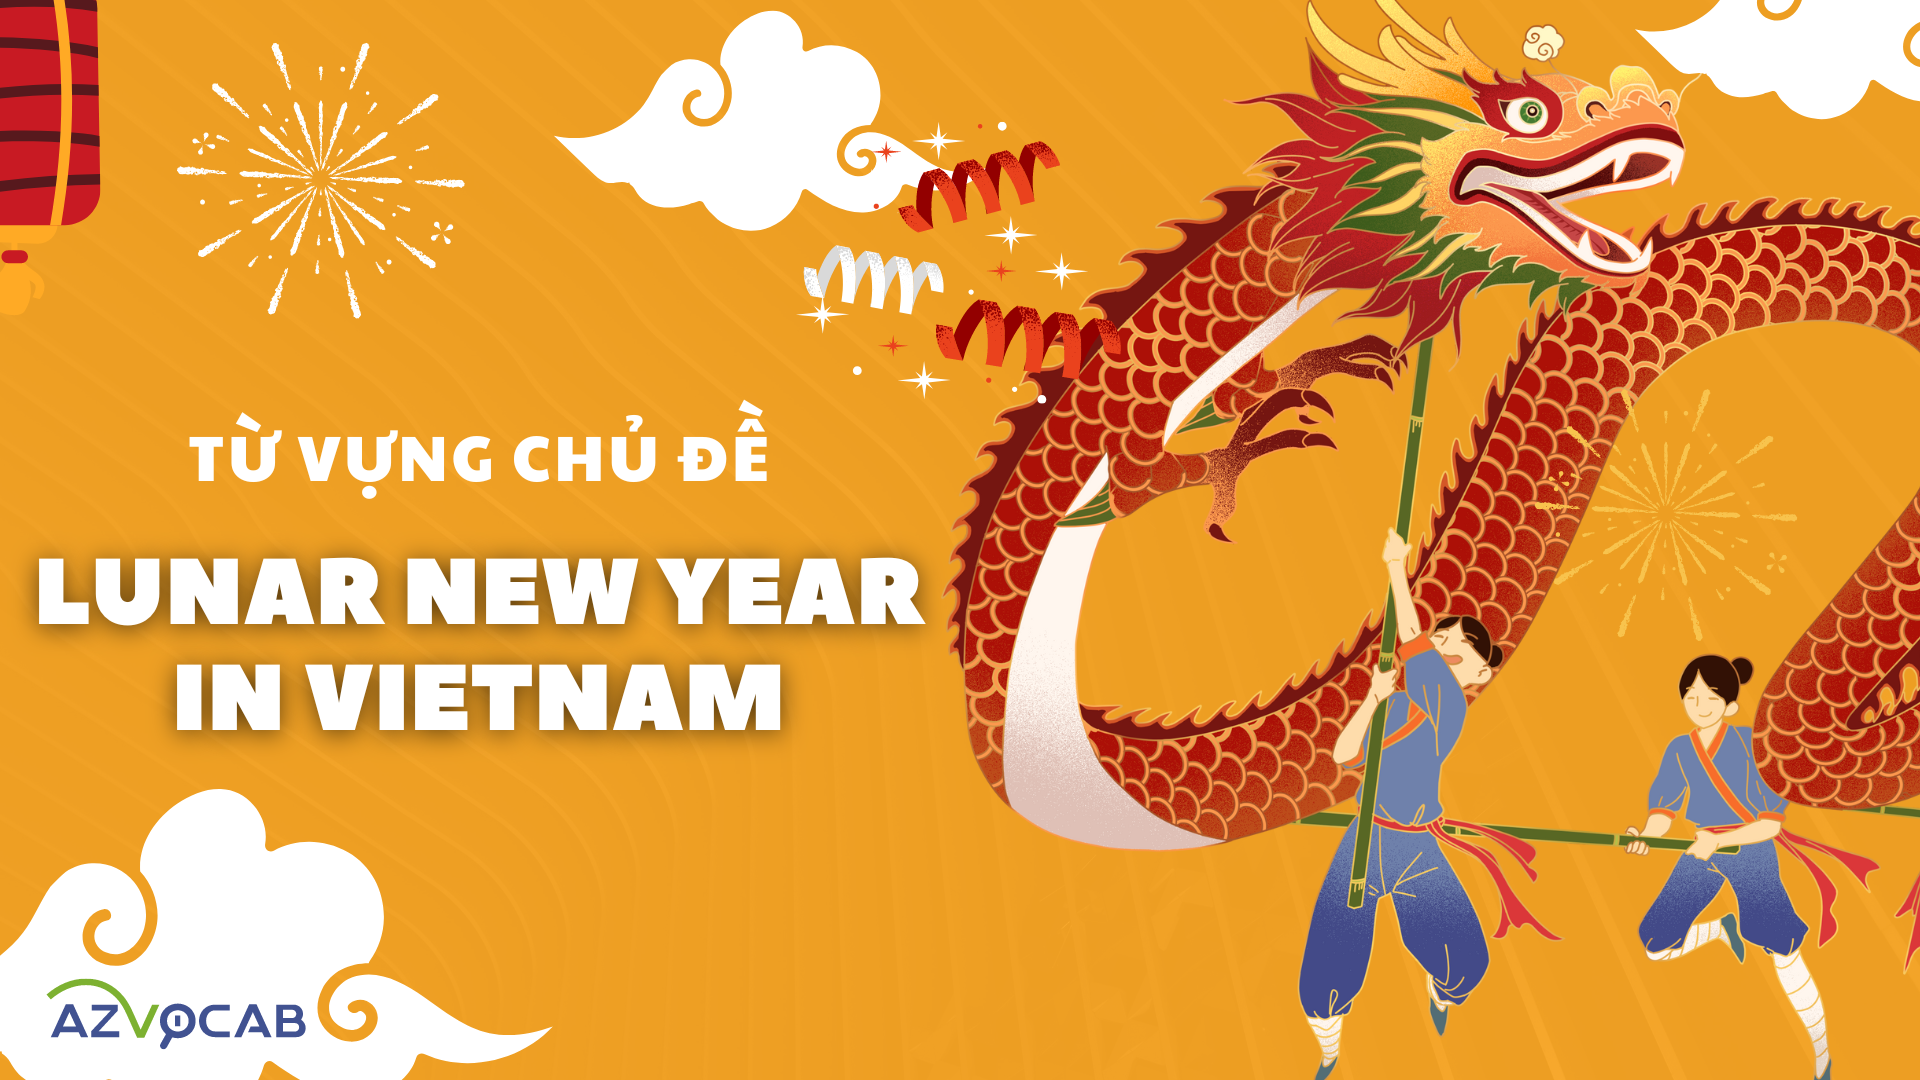 Lunar New Year in Vietnam